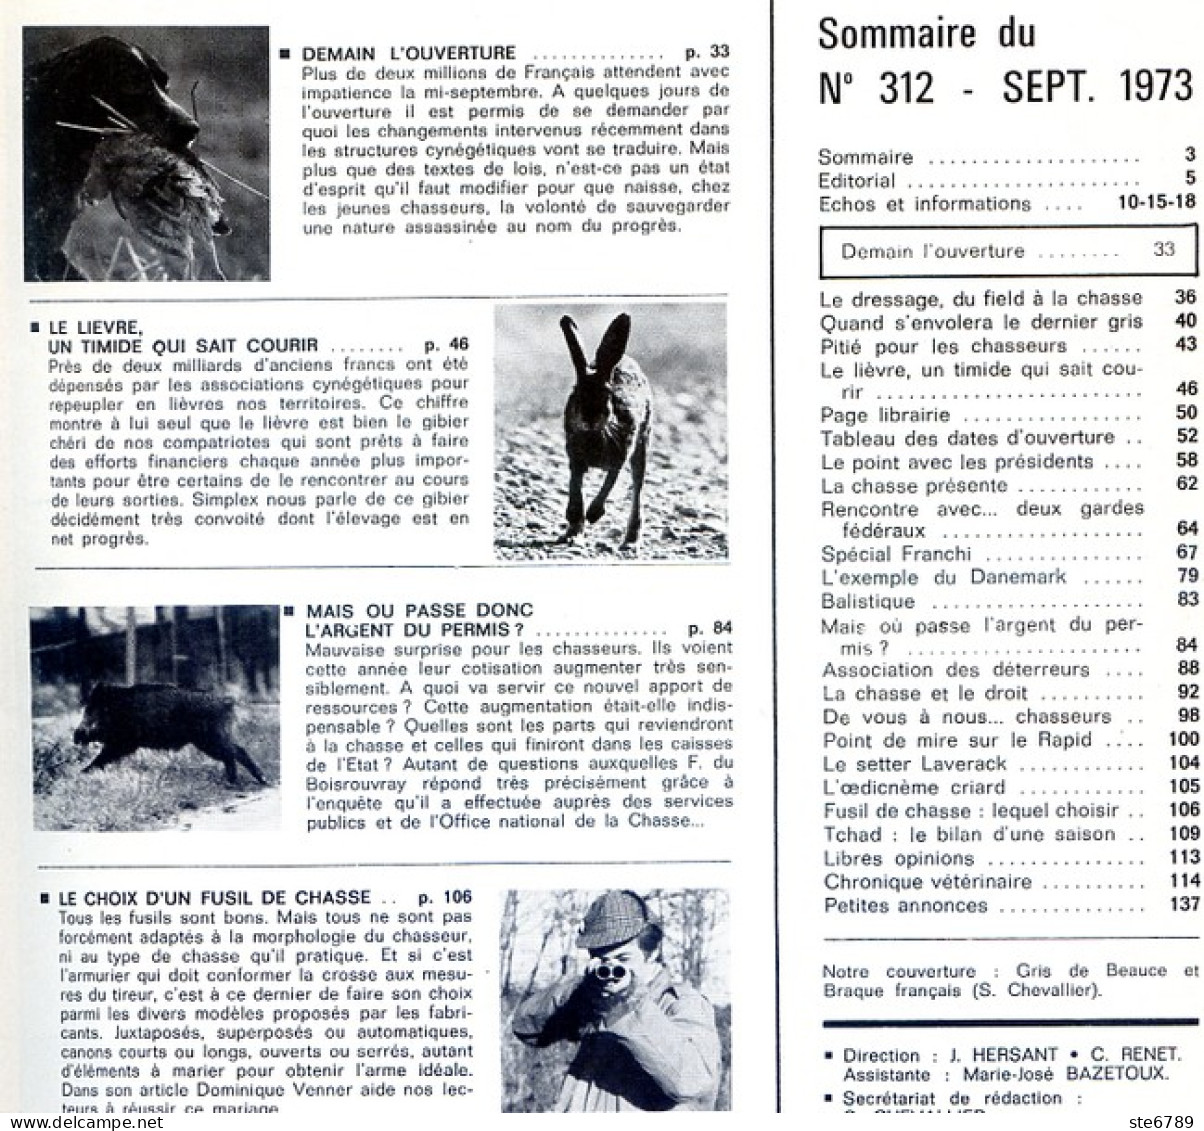 La Revue Nationale De LA CHASSE N° 312 Septembre 1973 Le Lievre , Choix Fusil De Chasse - Chasse & Pêche